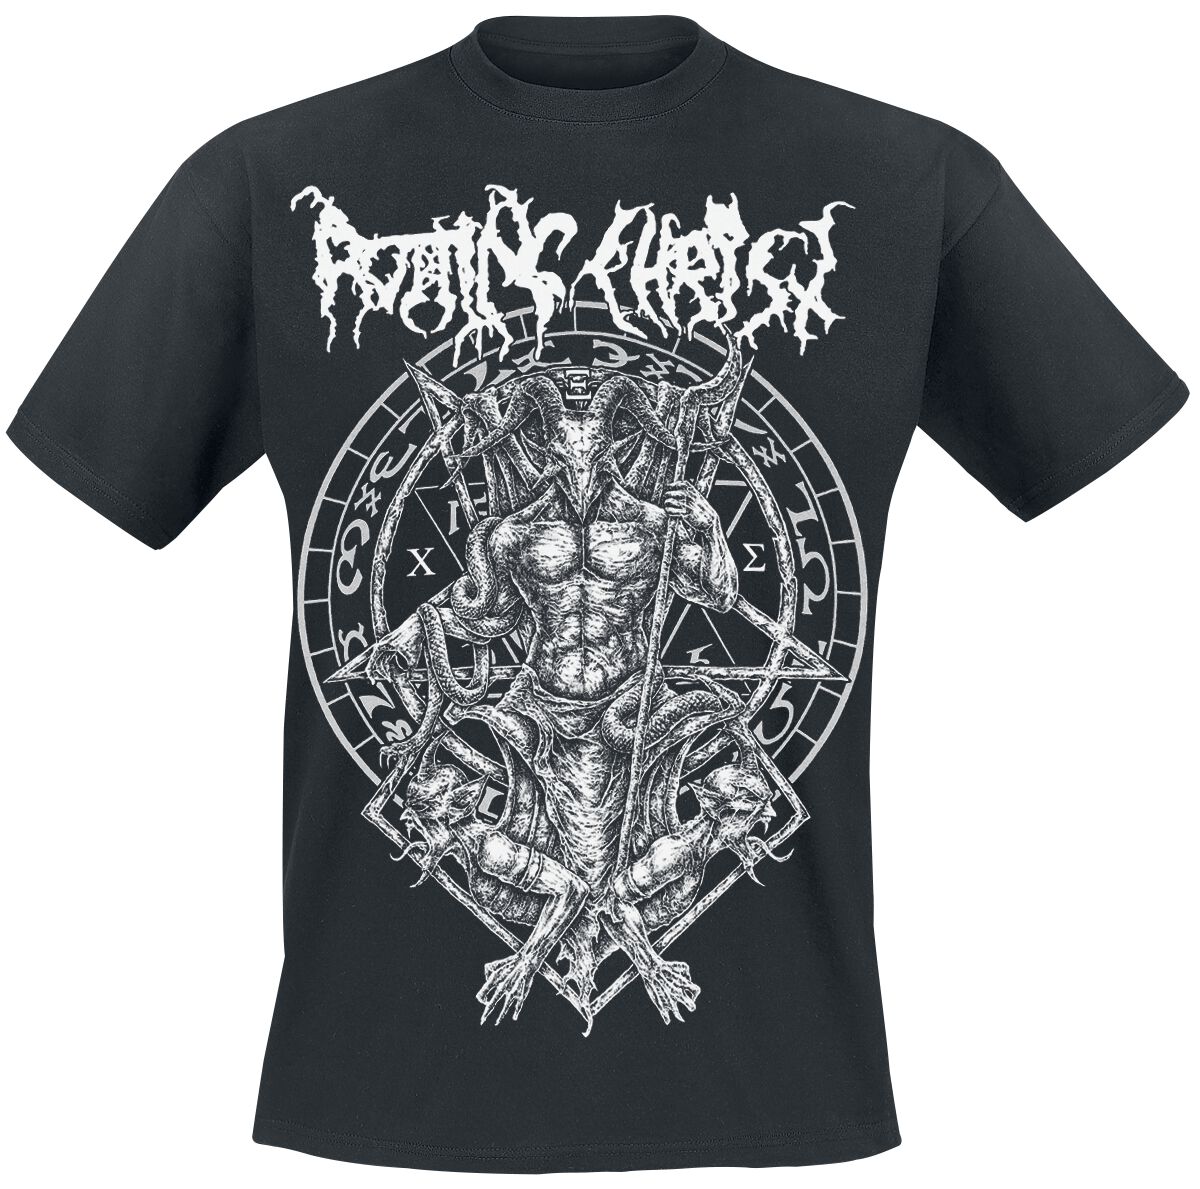 Rotting Christ T-Shirt - Hellenic Black Metal Legions - S bis XXL - für Männer - Größe L - schwarz  - Lizenziertes Merchandise!